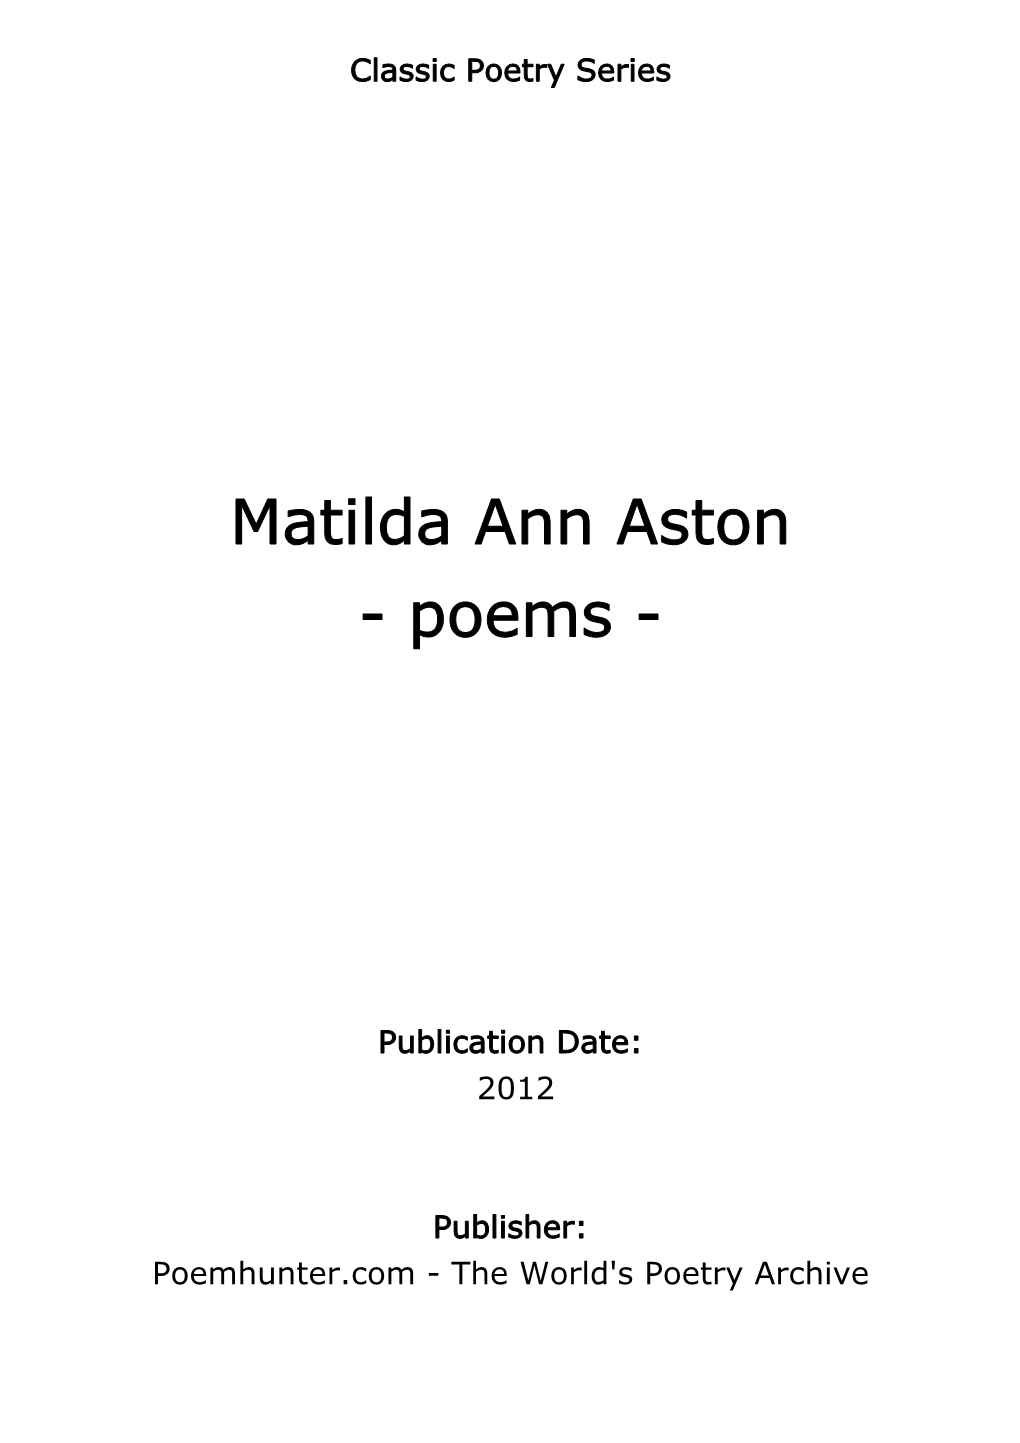 Matilda Ann Aston - Poems